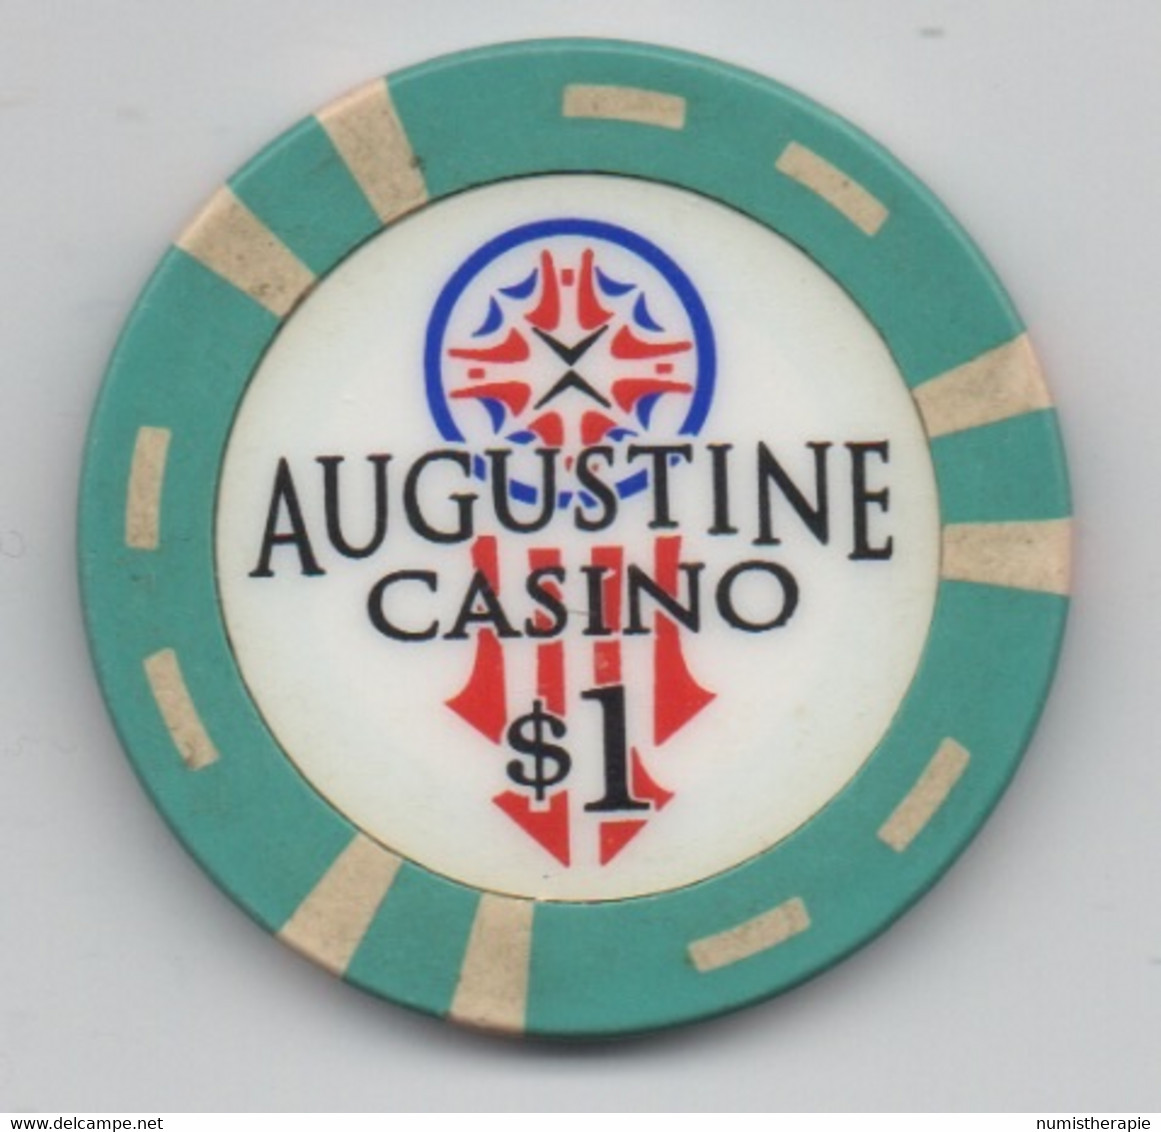 Augustine Casino $1 Coachella CA - Casino